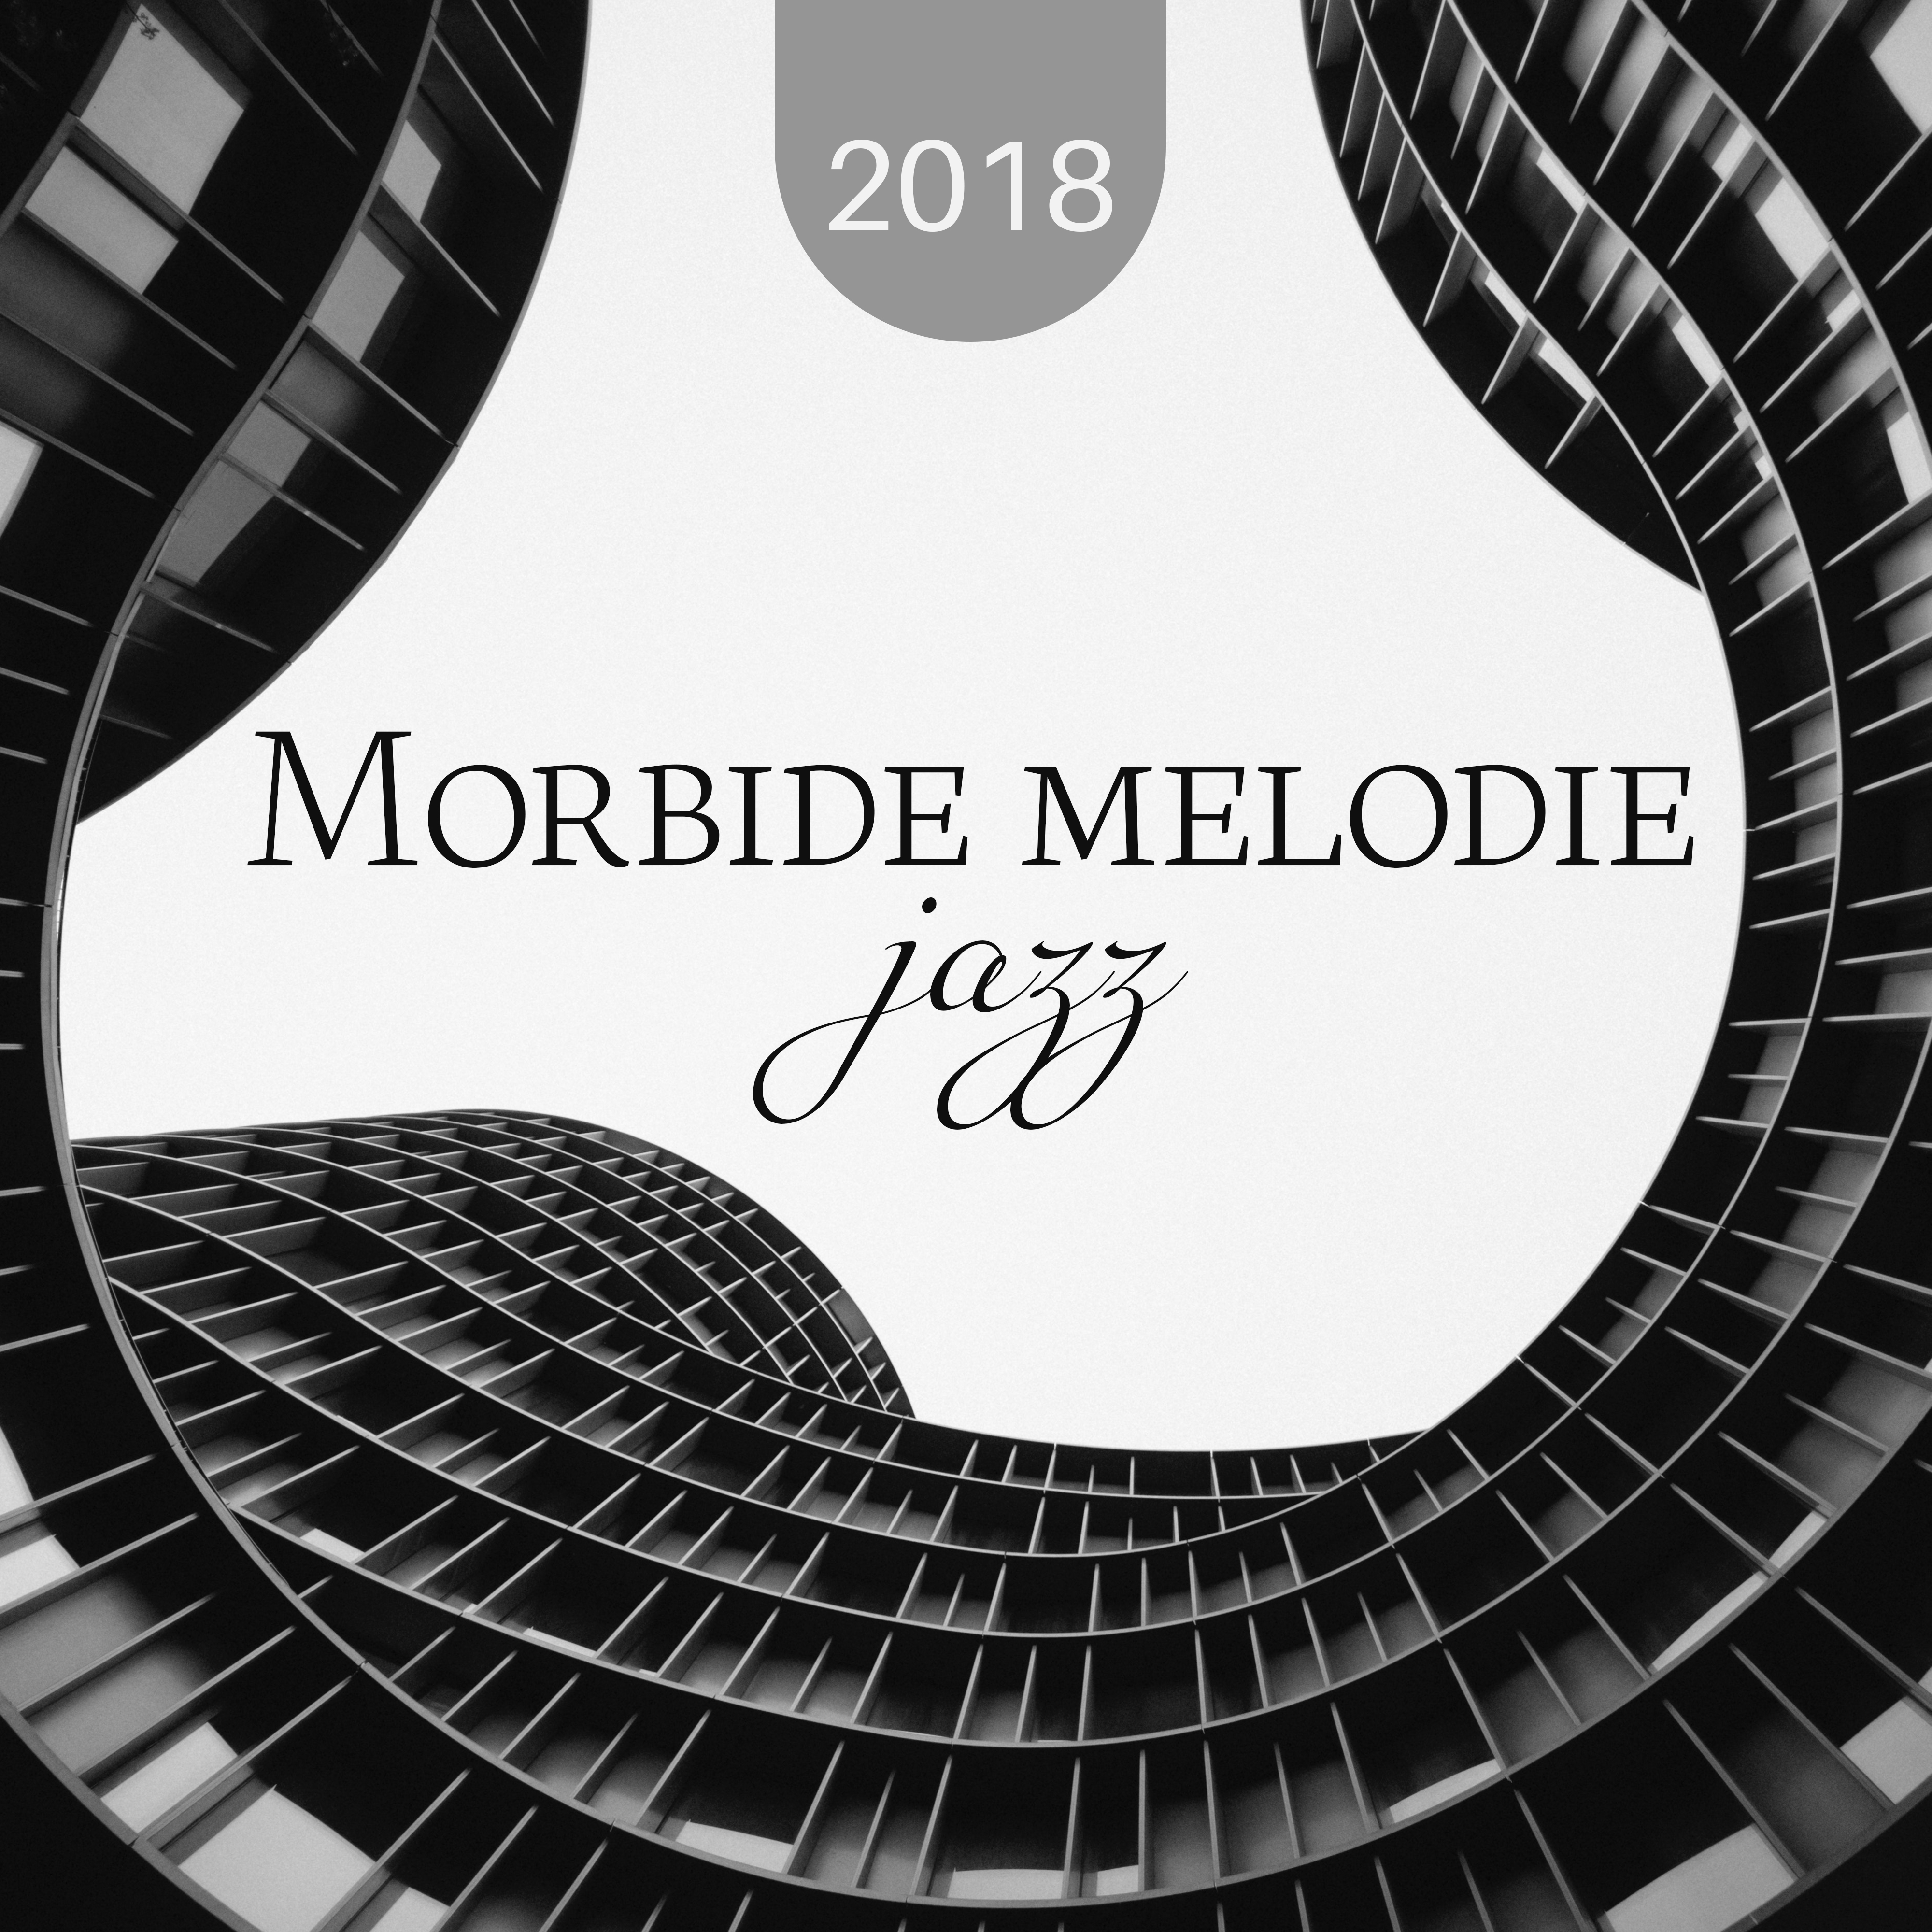 2018 Morbide melodie jazz